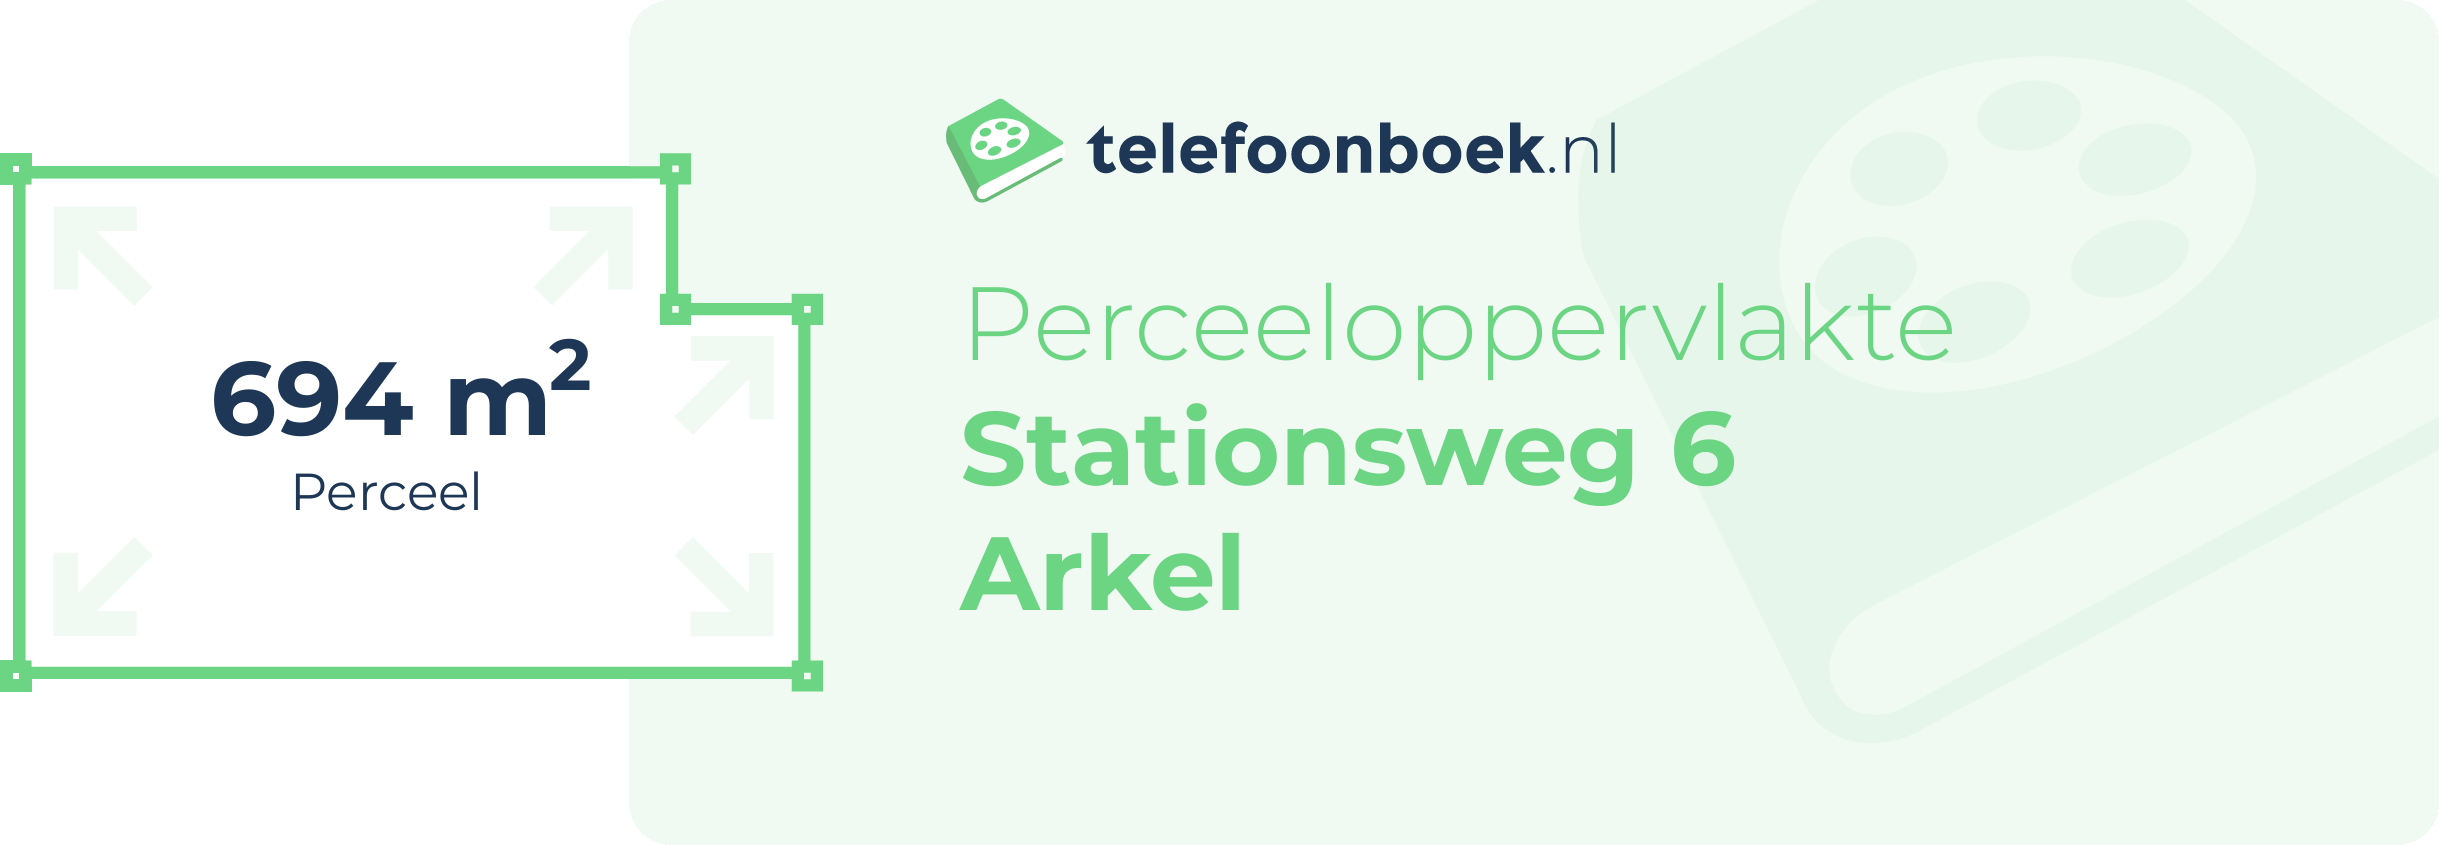 Perceeloppervlakte Stationsweg 6 Arkel